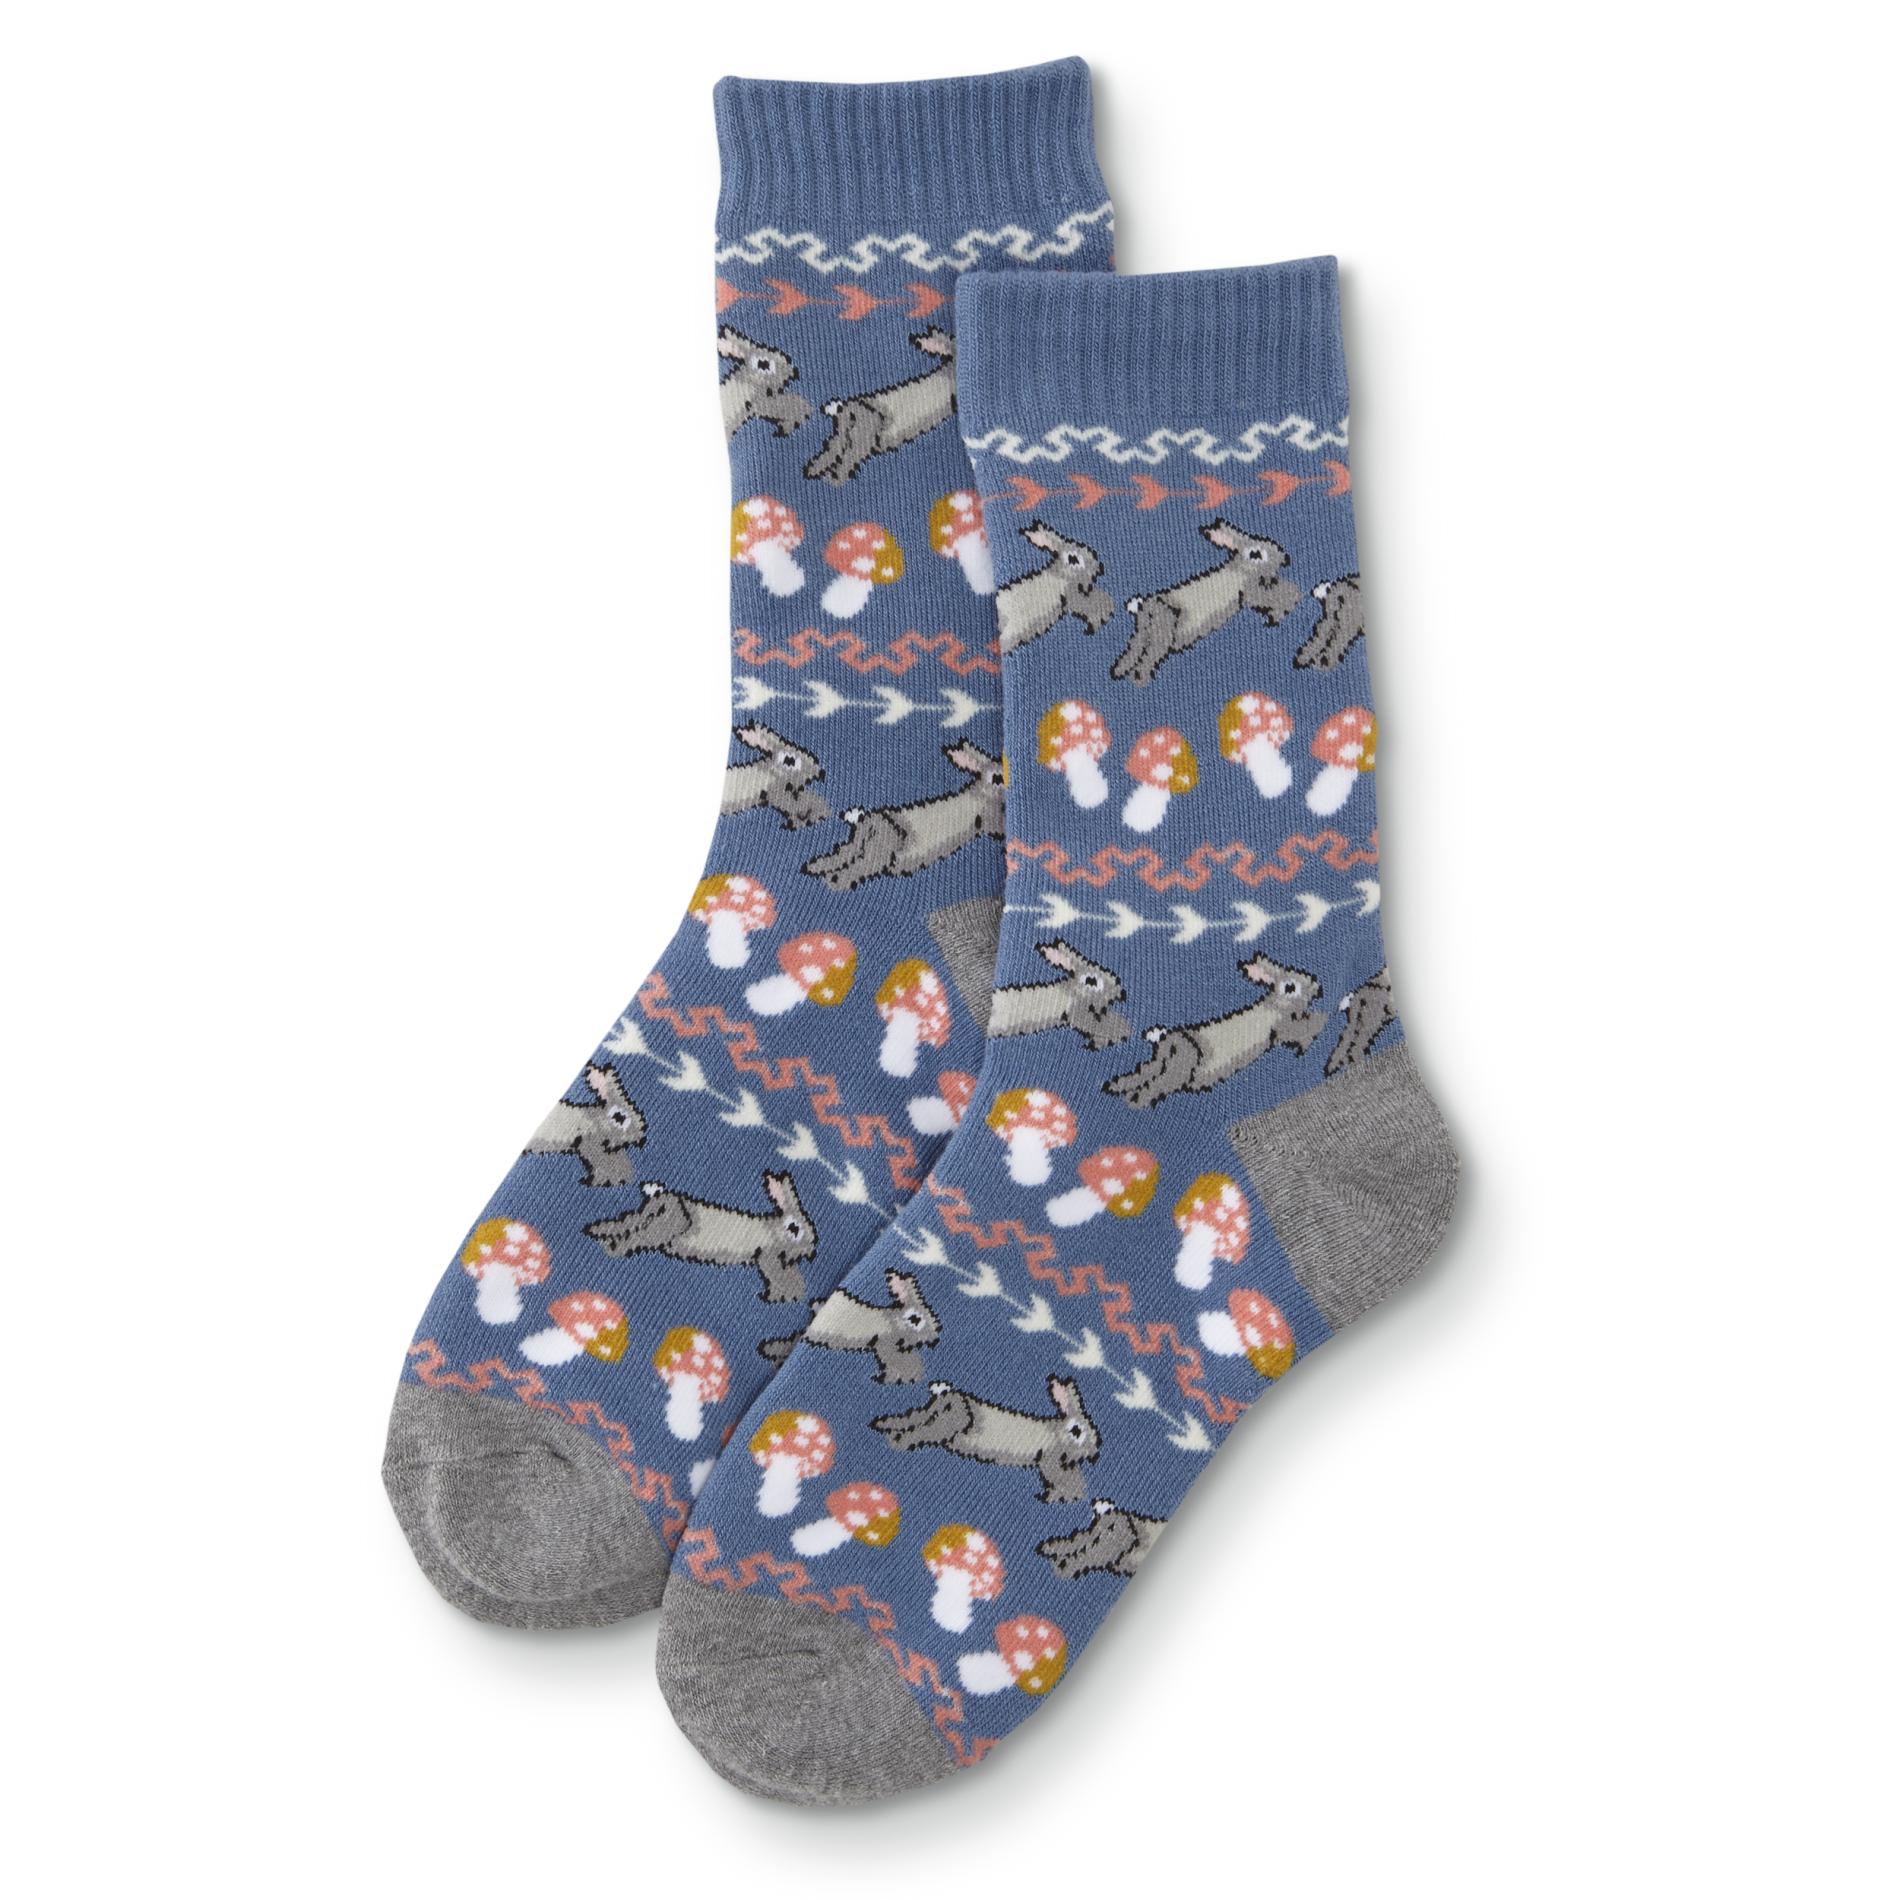 Women's Sweater Socks - Bunnies/Mushrooms